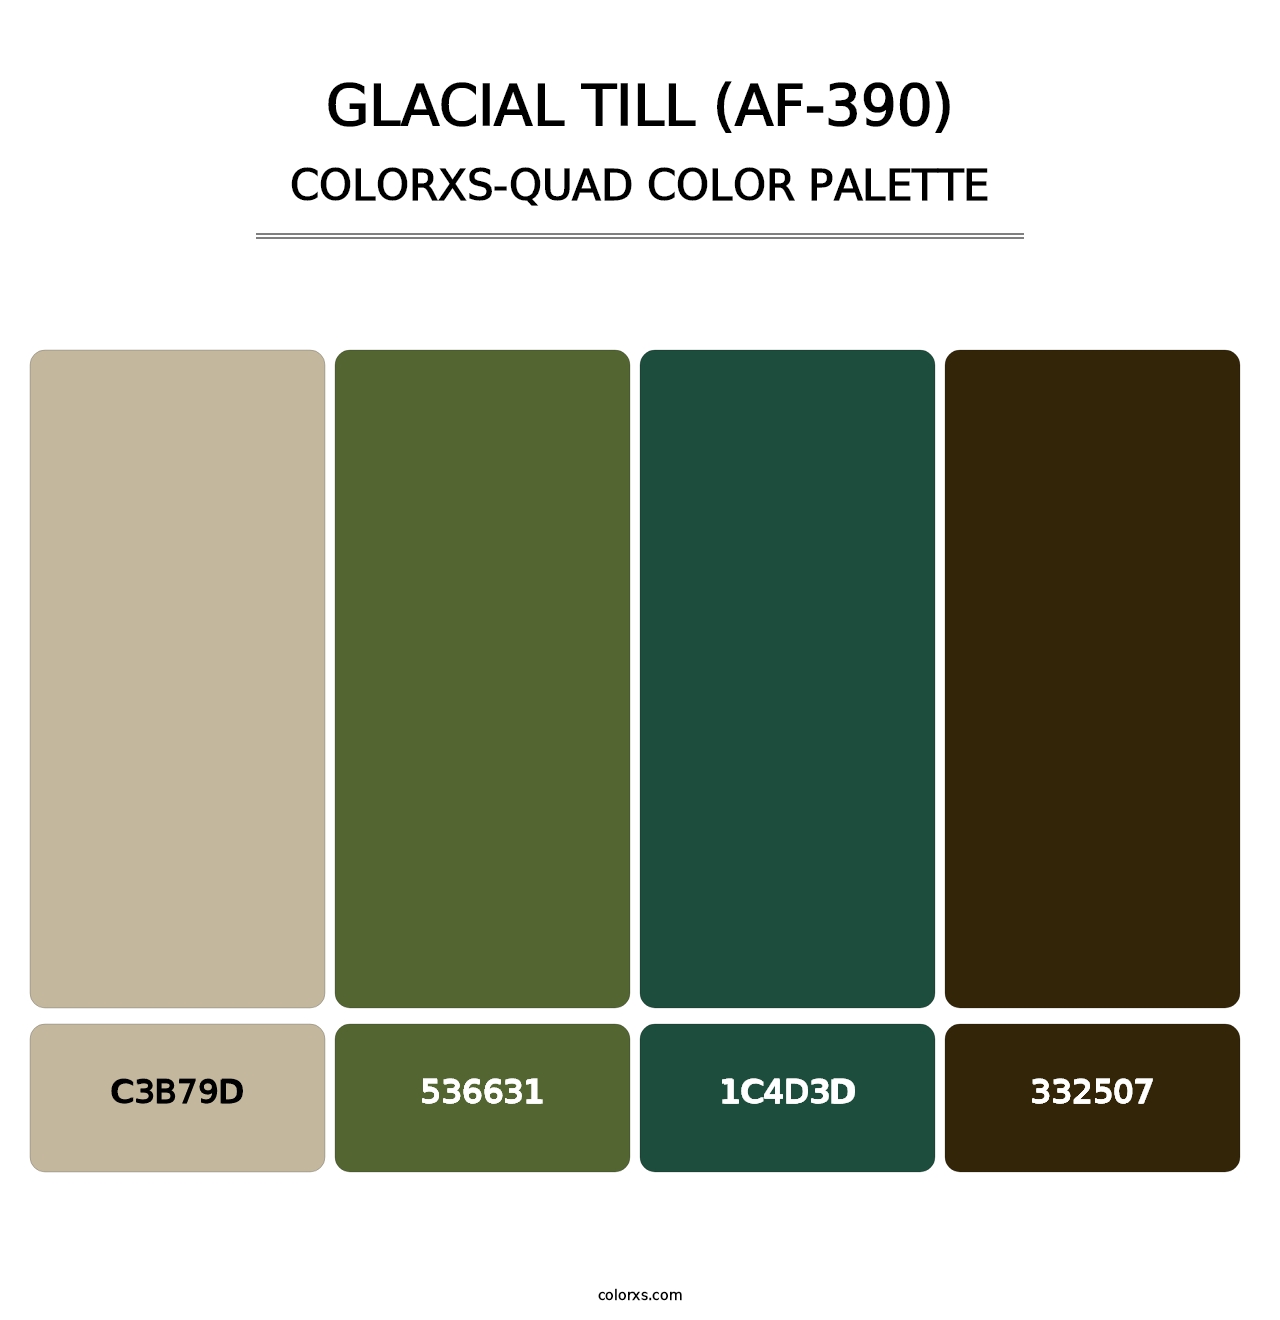 Glacial Till (AF-390) - Colorxs Quad Palette